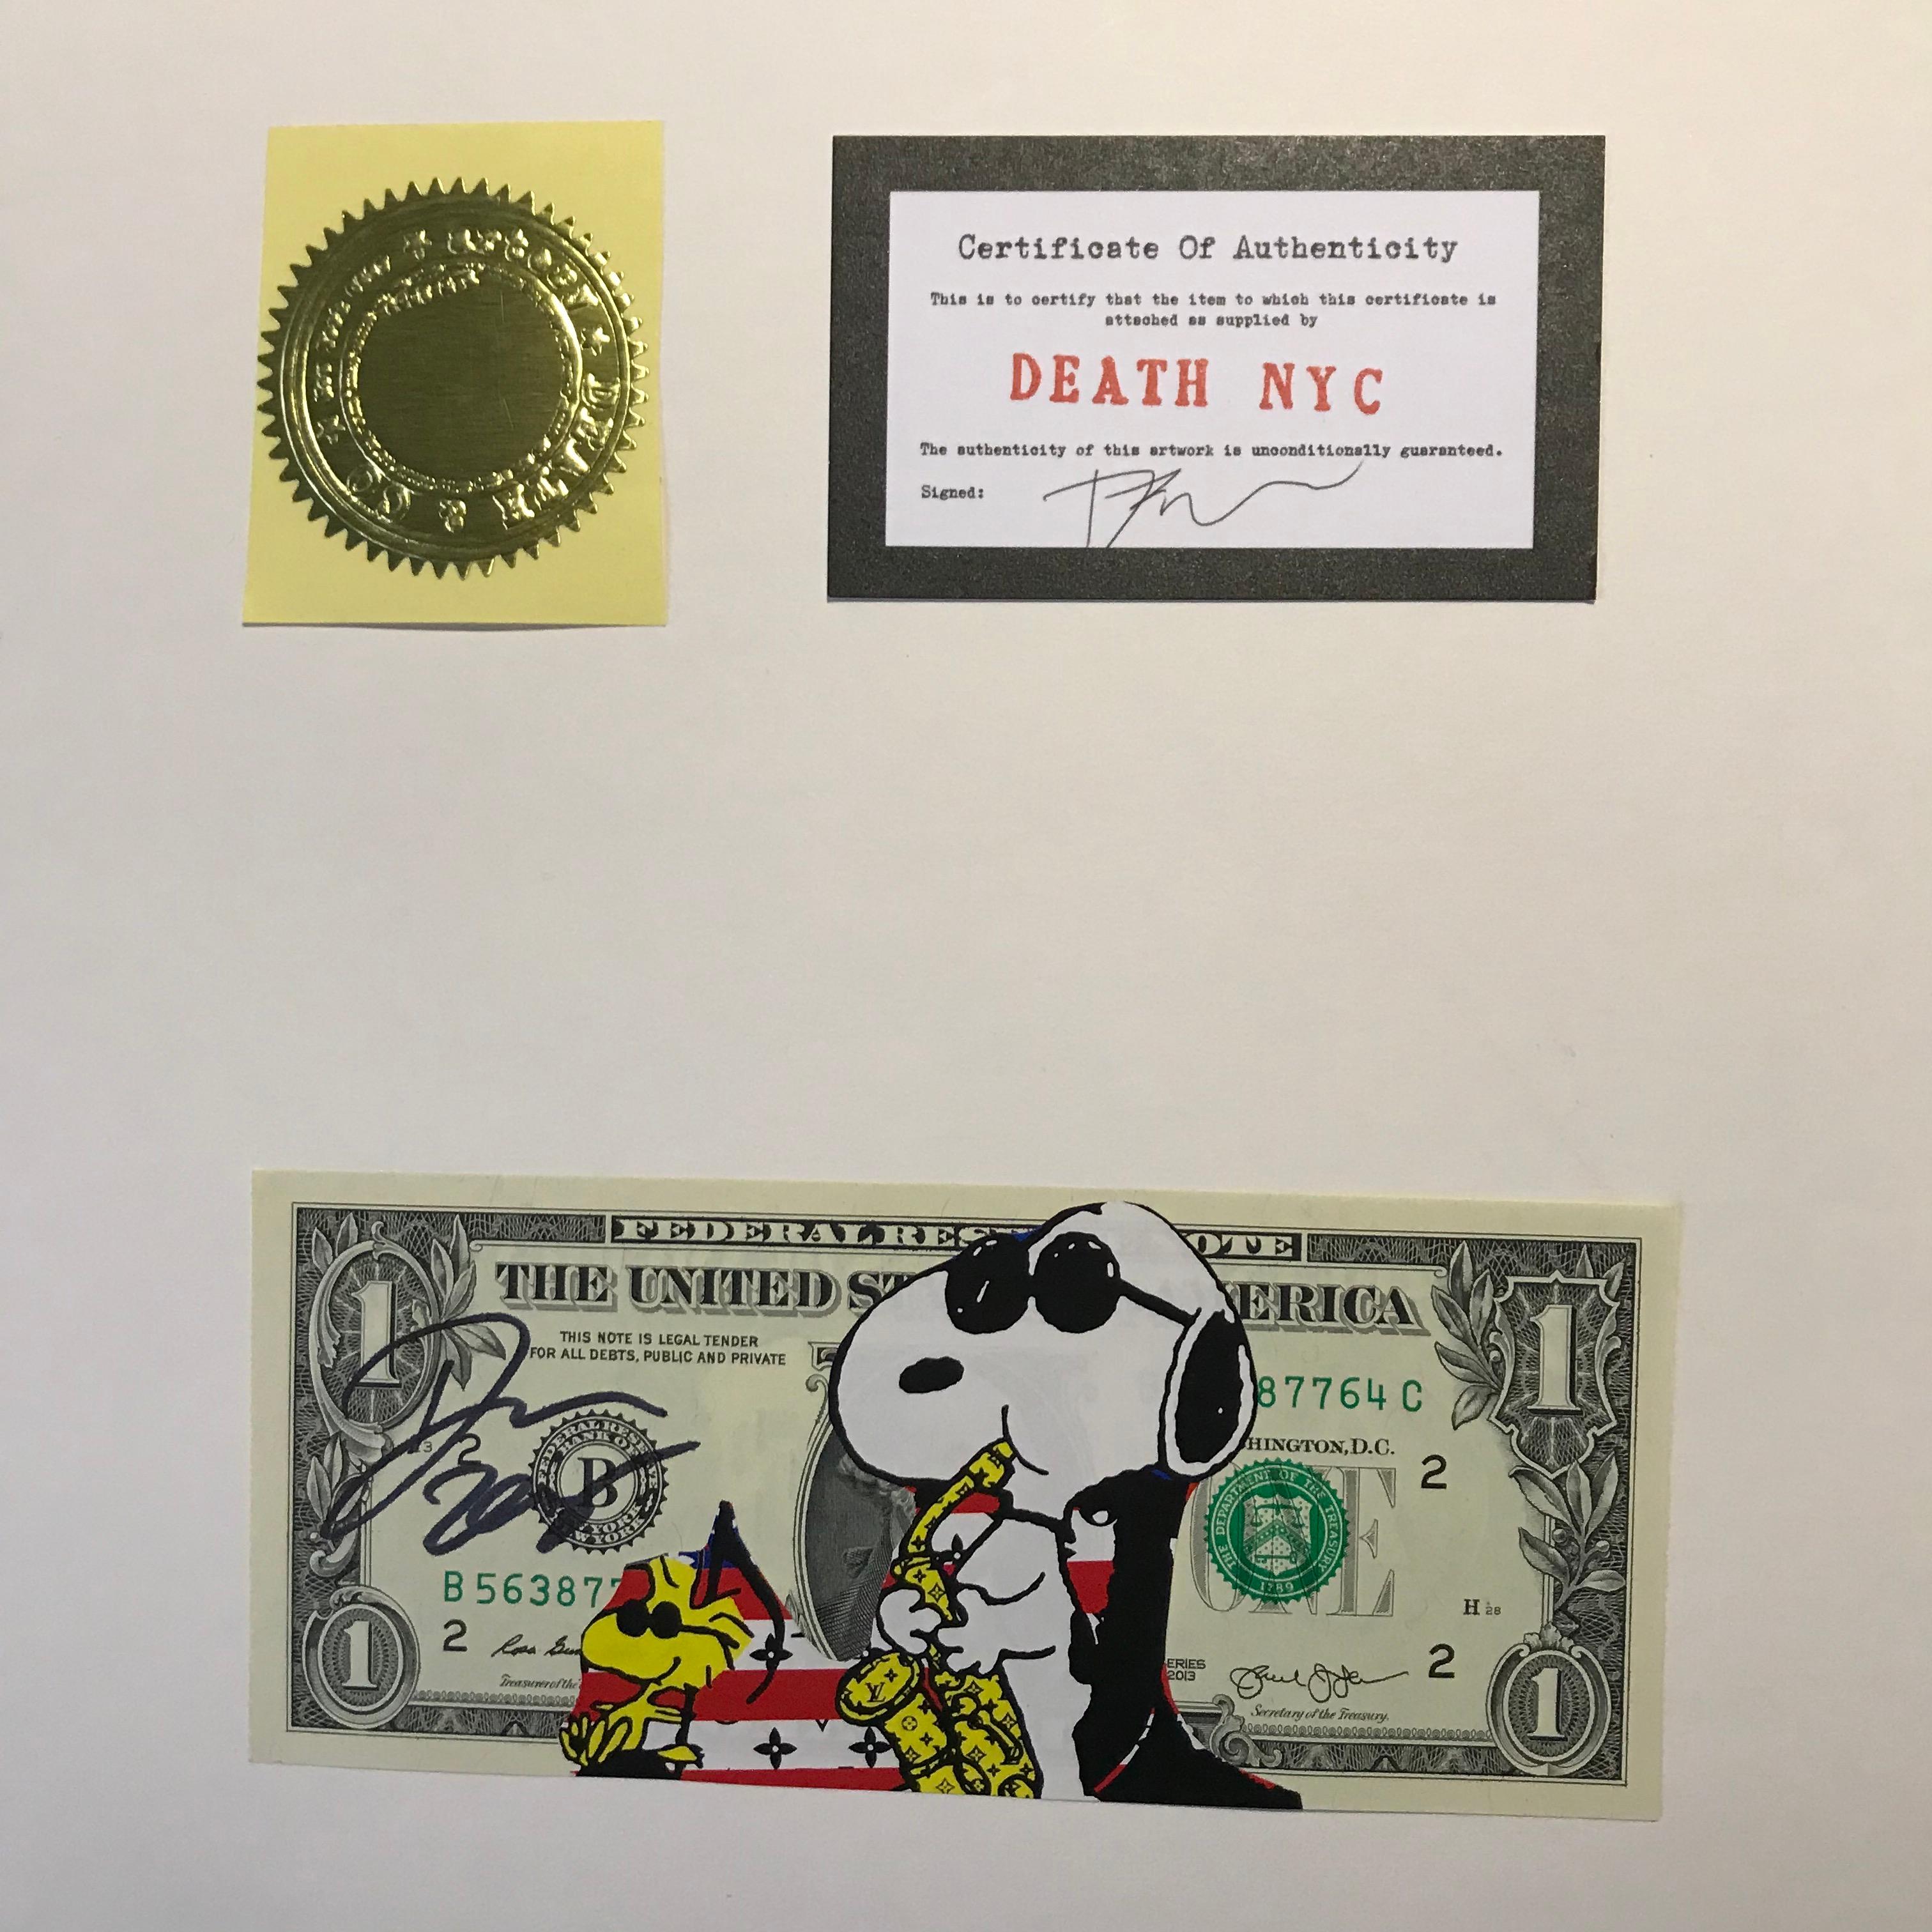 Death NYC
Vuitton saxo Snoopy
Techniques mixtes sur billet de 1 dollar
2017
Exemplaire unique 
2 certificats 
Signé et daté 
15,5 x 6,7 cms
99 euros